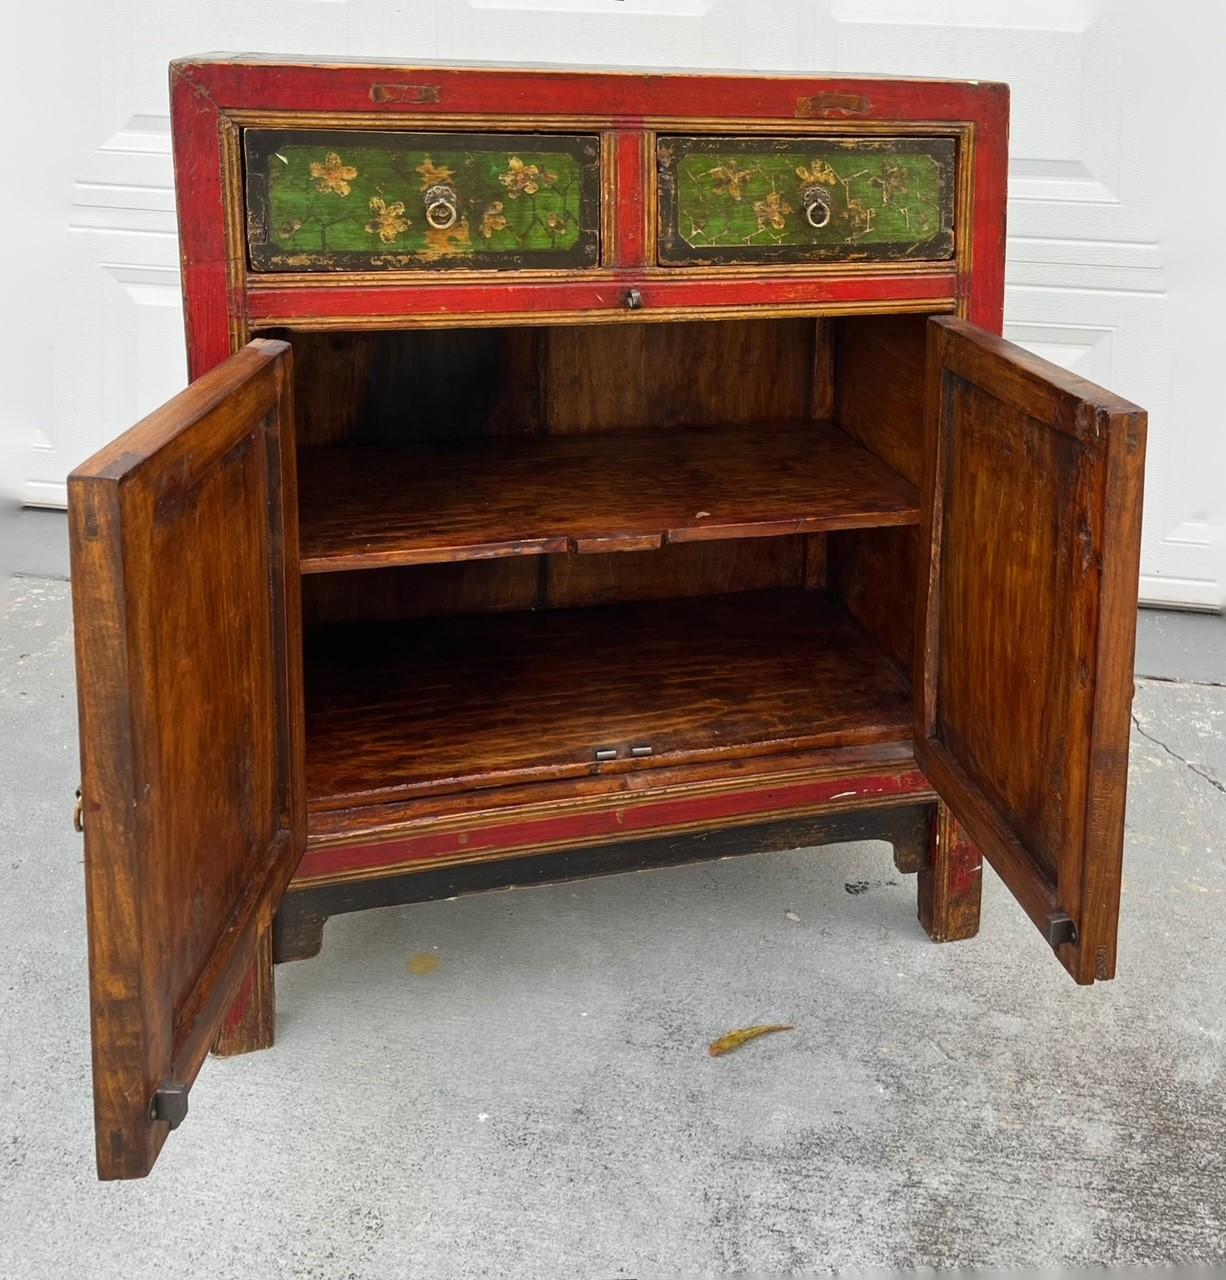 Chinese Painted Vintage Elm Hall Cabinet.

Wunderschöner handbemalter chinesischer Schrank aus massivem Ulmenholz mit originalem Antik-Finish. Mit zwei vorderen Schubladen und zwei Türen ist es von Bedeutung für ein authentisches Design. Der Schrank